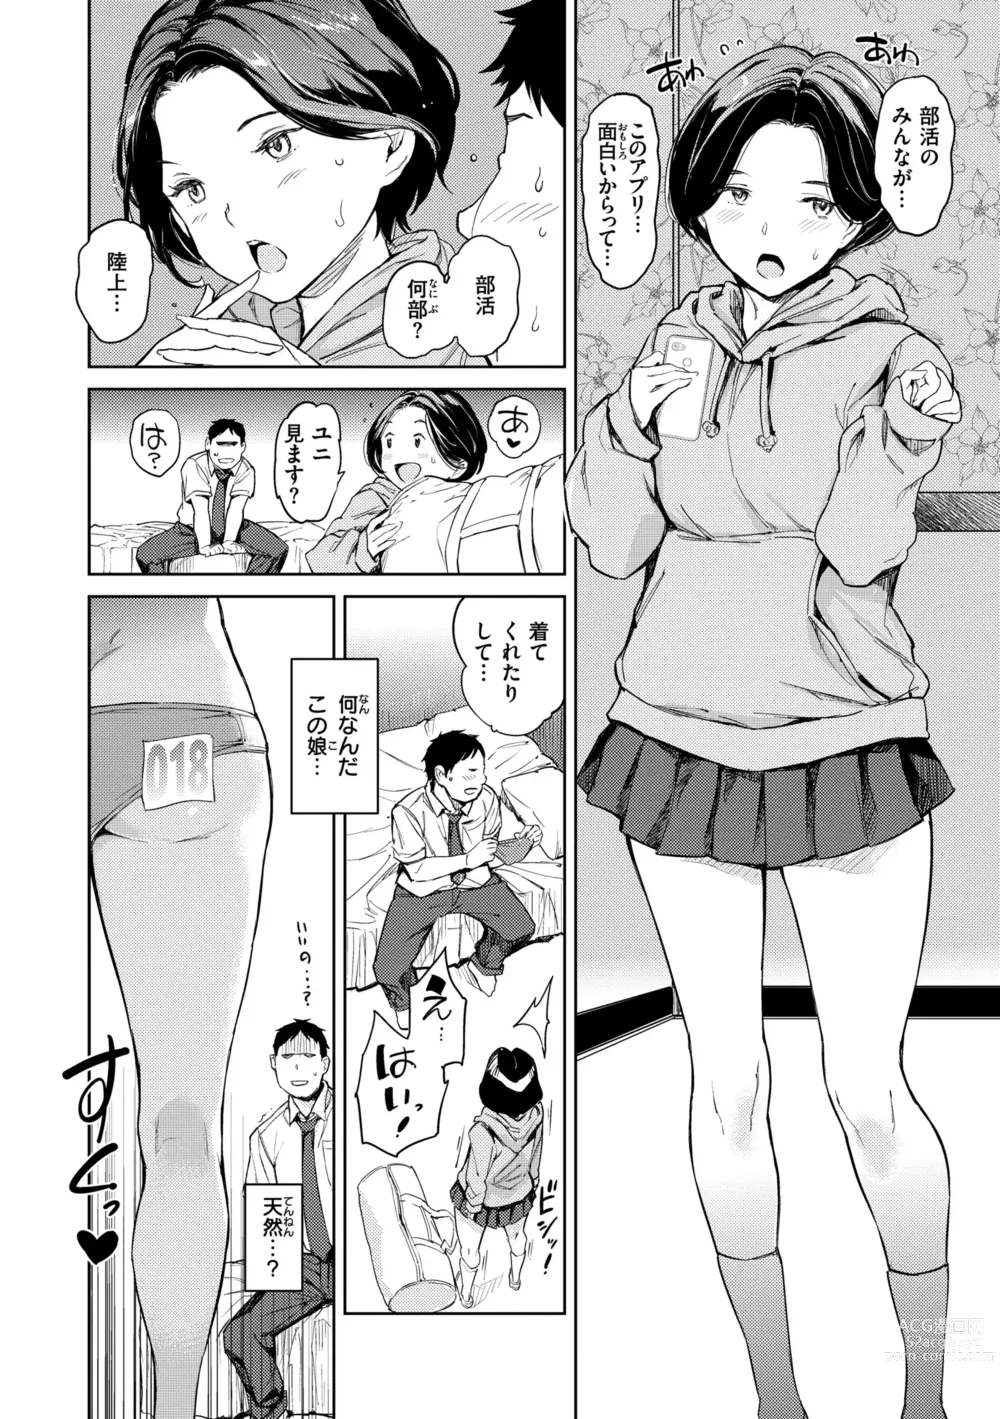 Page 20 of manga Gyouretsu no Dekiru Shoujo - The girl makes a lot of guys erect.